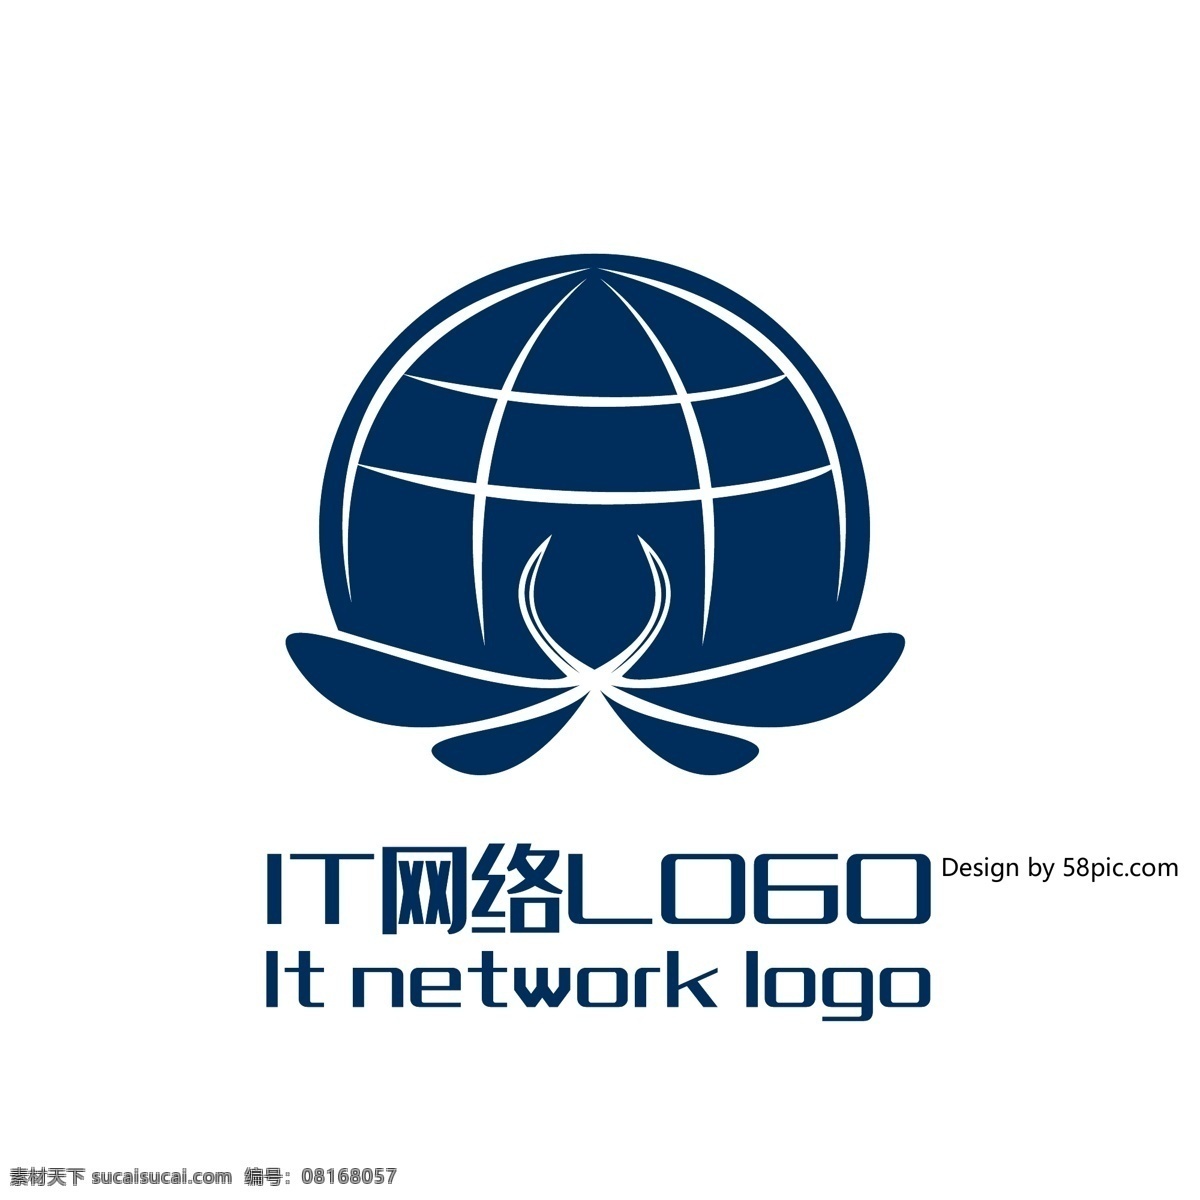 原创 创意 简约 x 字 蝴蝶 星球 it 网络 logo 可商用 字体设计 标志